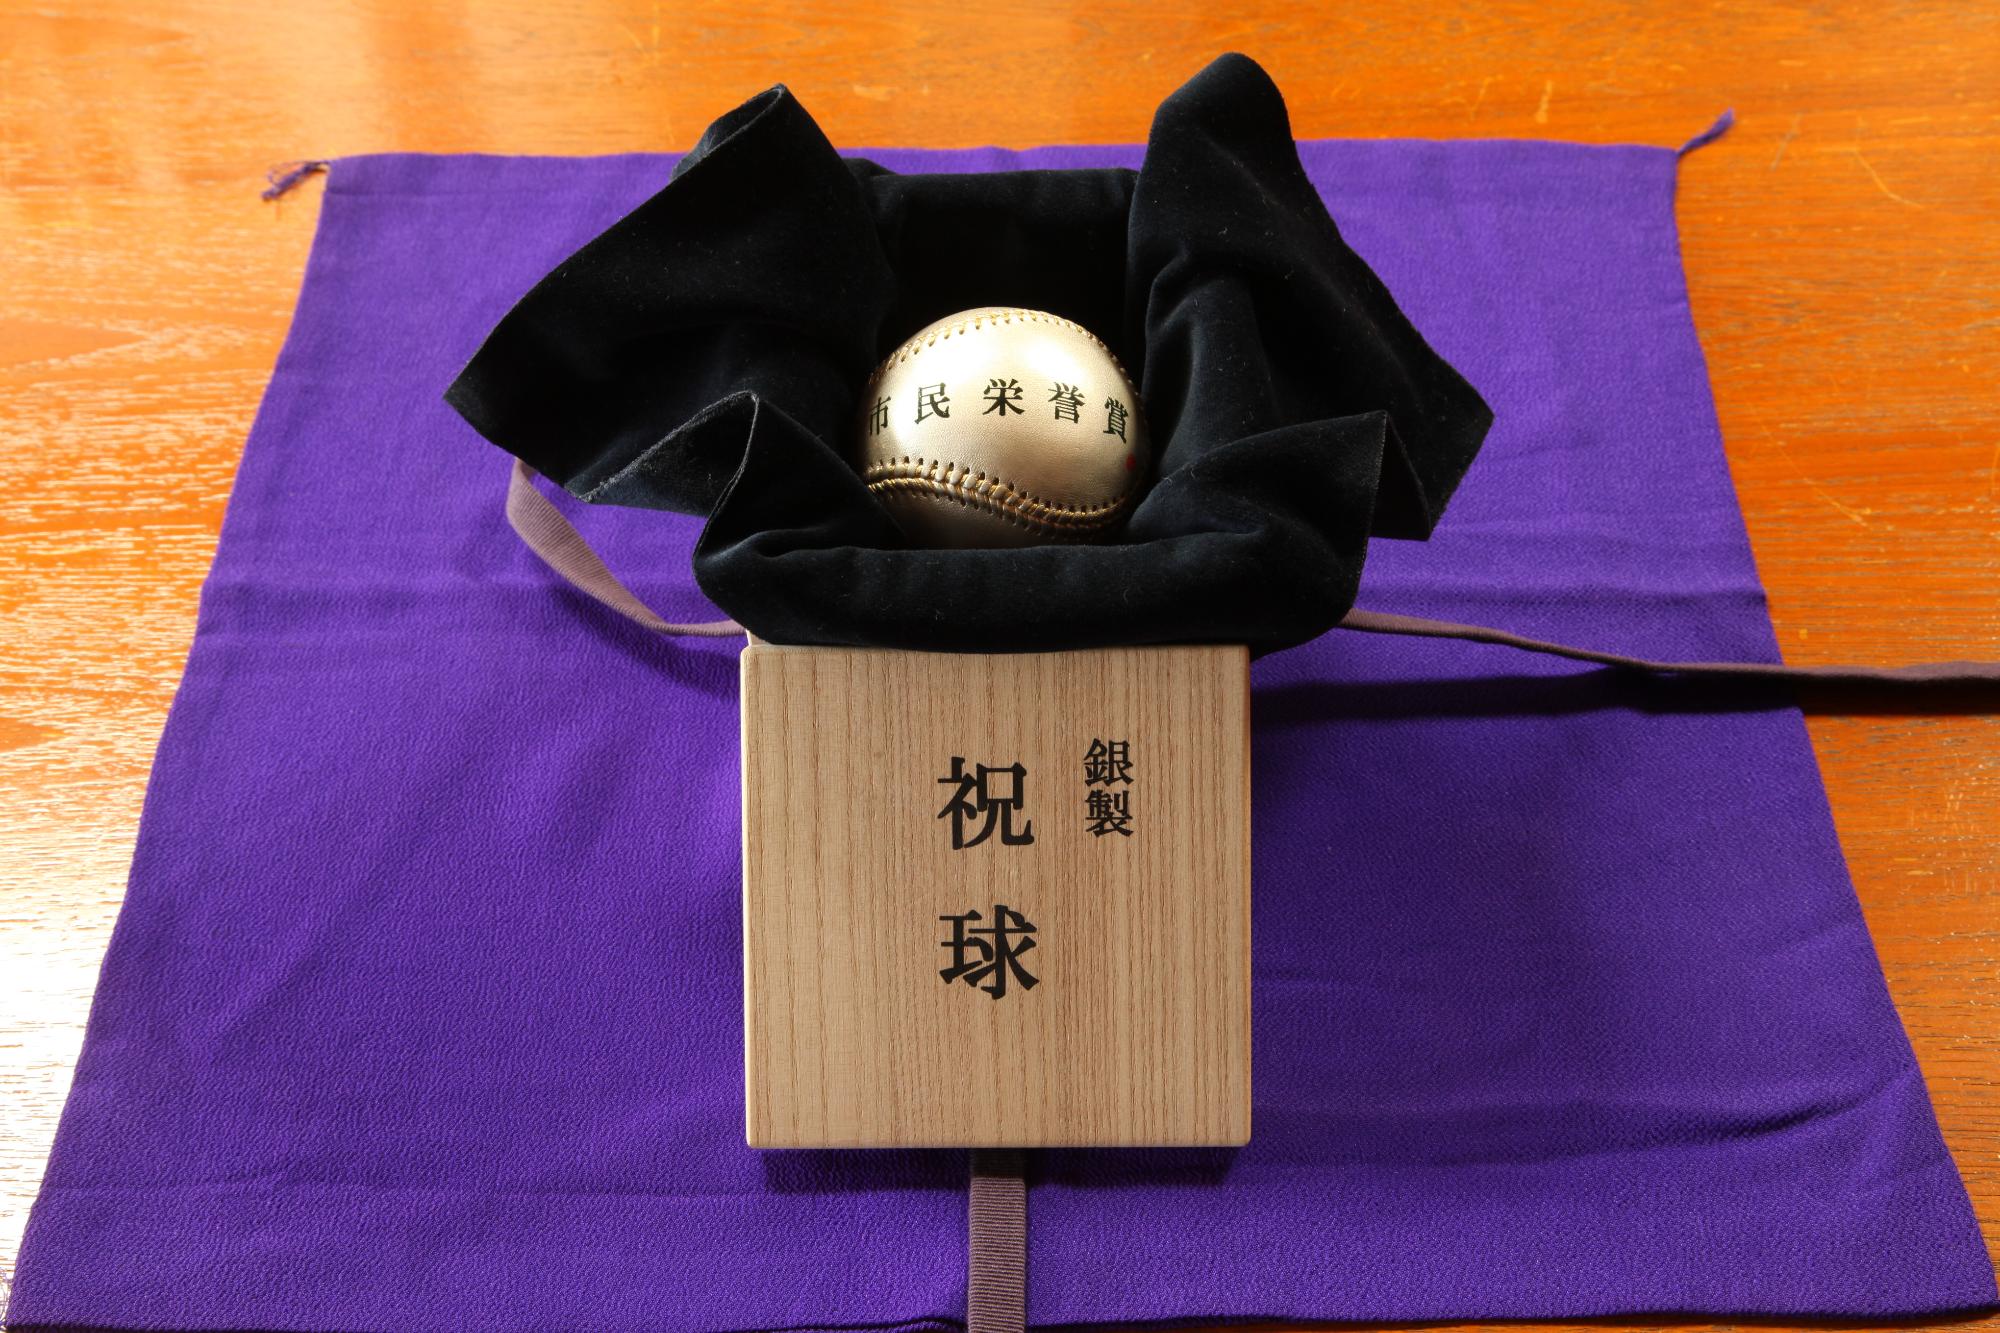 市民栄誉賞と書かれた銀色のボールが、銀製 祝球と書かれた木箱の中に収められている写真